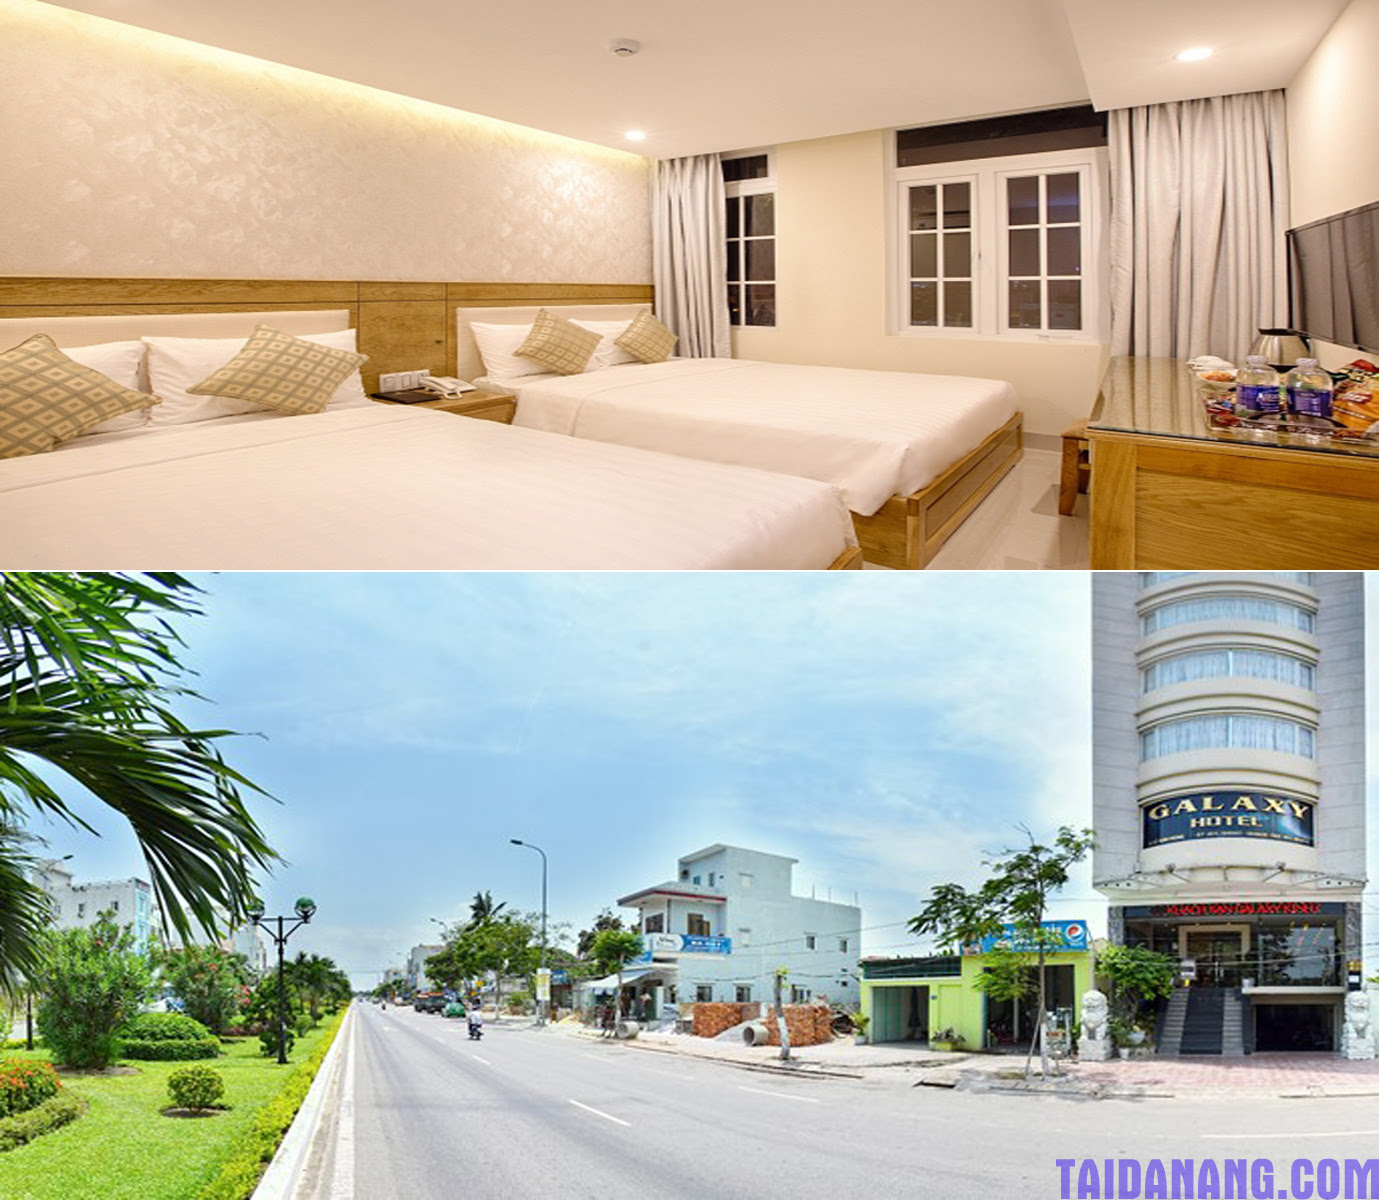 Kinh nghiệm du lịch Đà Nẵng về chọn lựa các khách sạn giá rẻ Kinh-nghiem-du-lich-da-nang-221